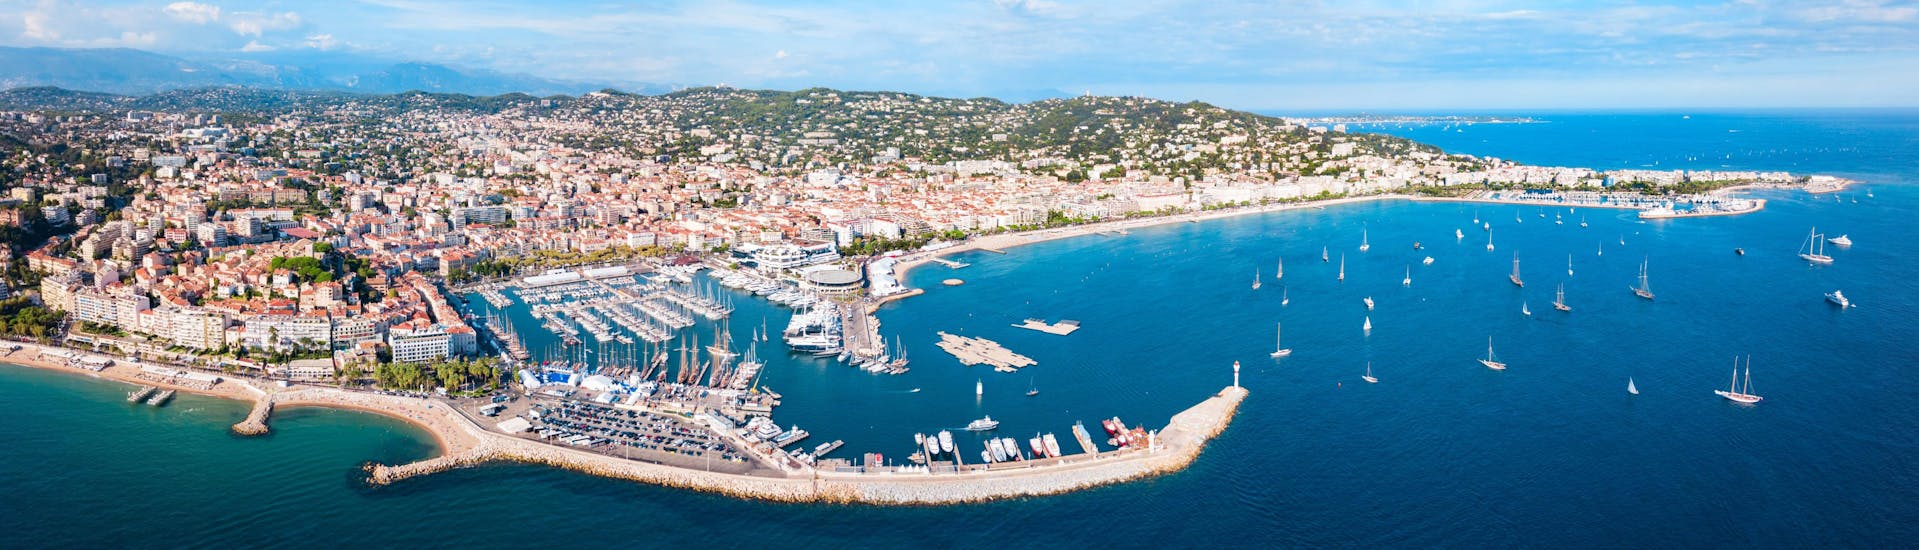 Foto de Cannes, en Francia, donde se pueden reservar excursiones en barco.